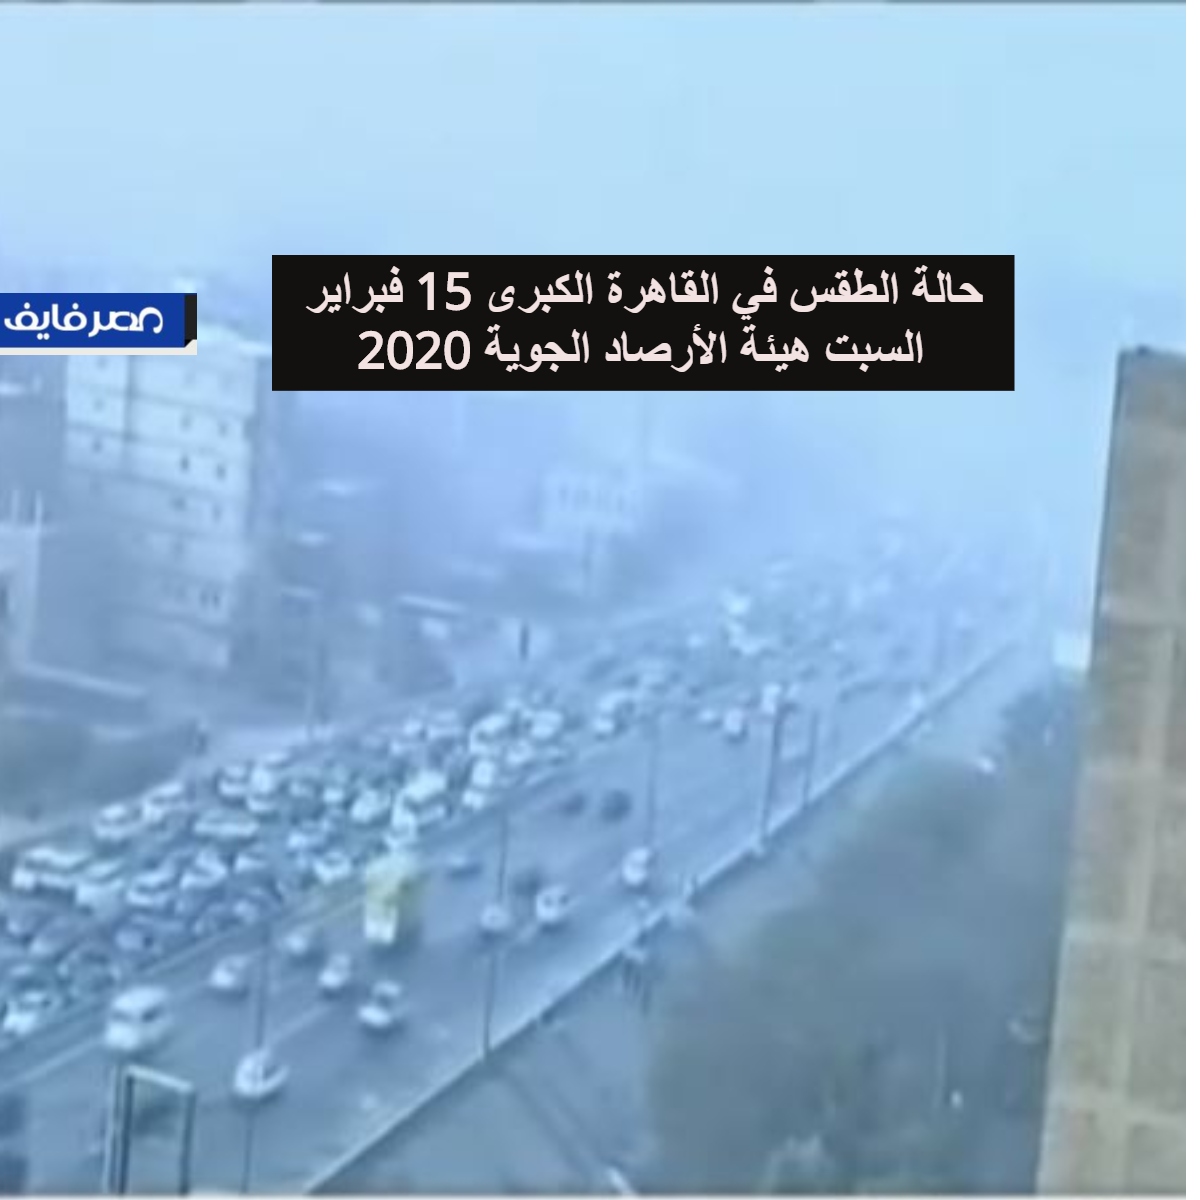 حالة الطقس في القاهرة الكبرى 15 فبراير 2020 السبت هيئة الأرصاد الجوية